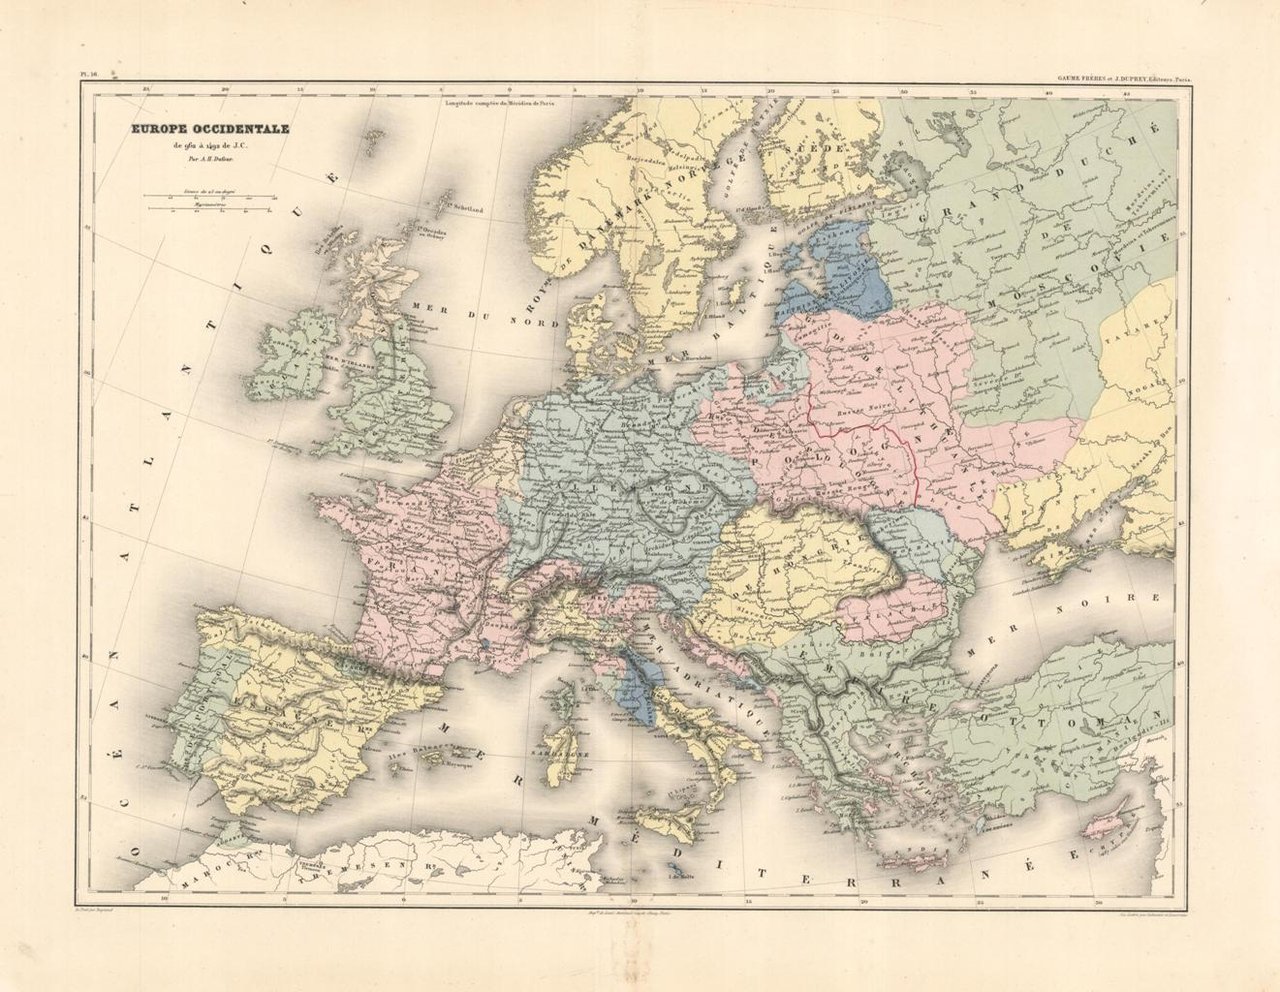 Europe occidentale de 962 à 1492 de J. C.